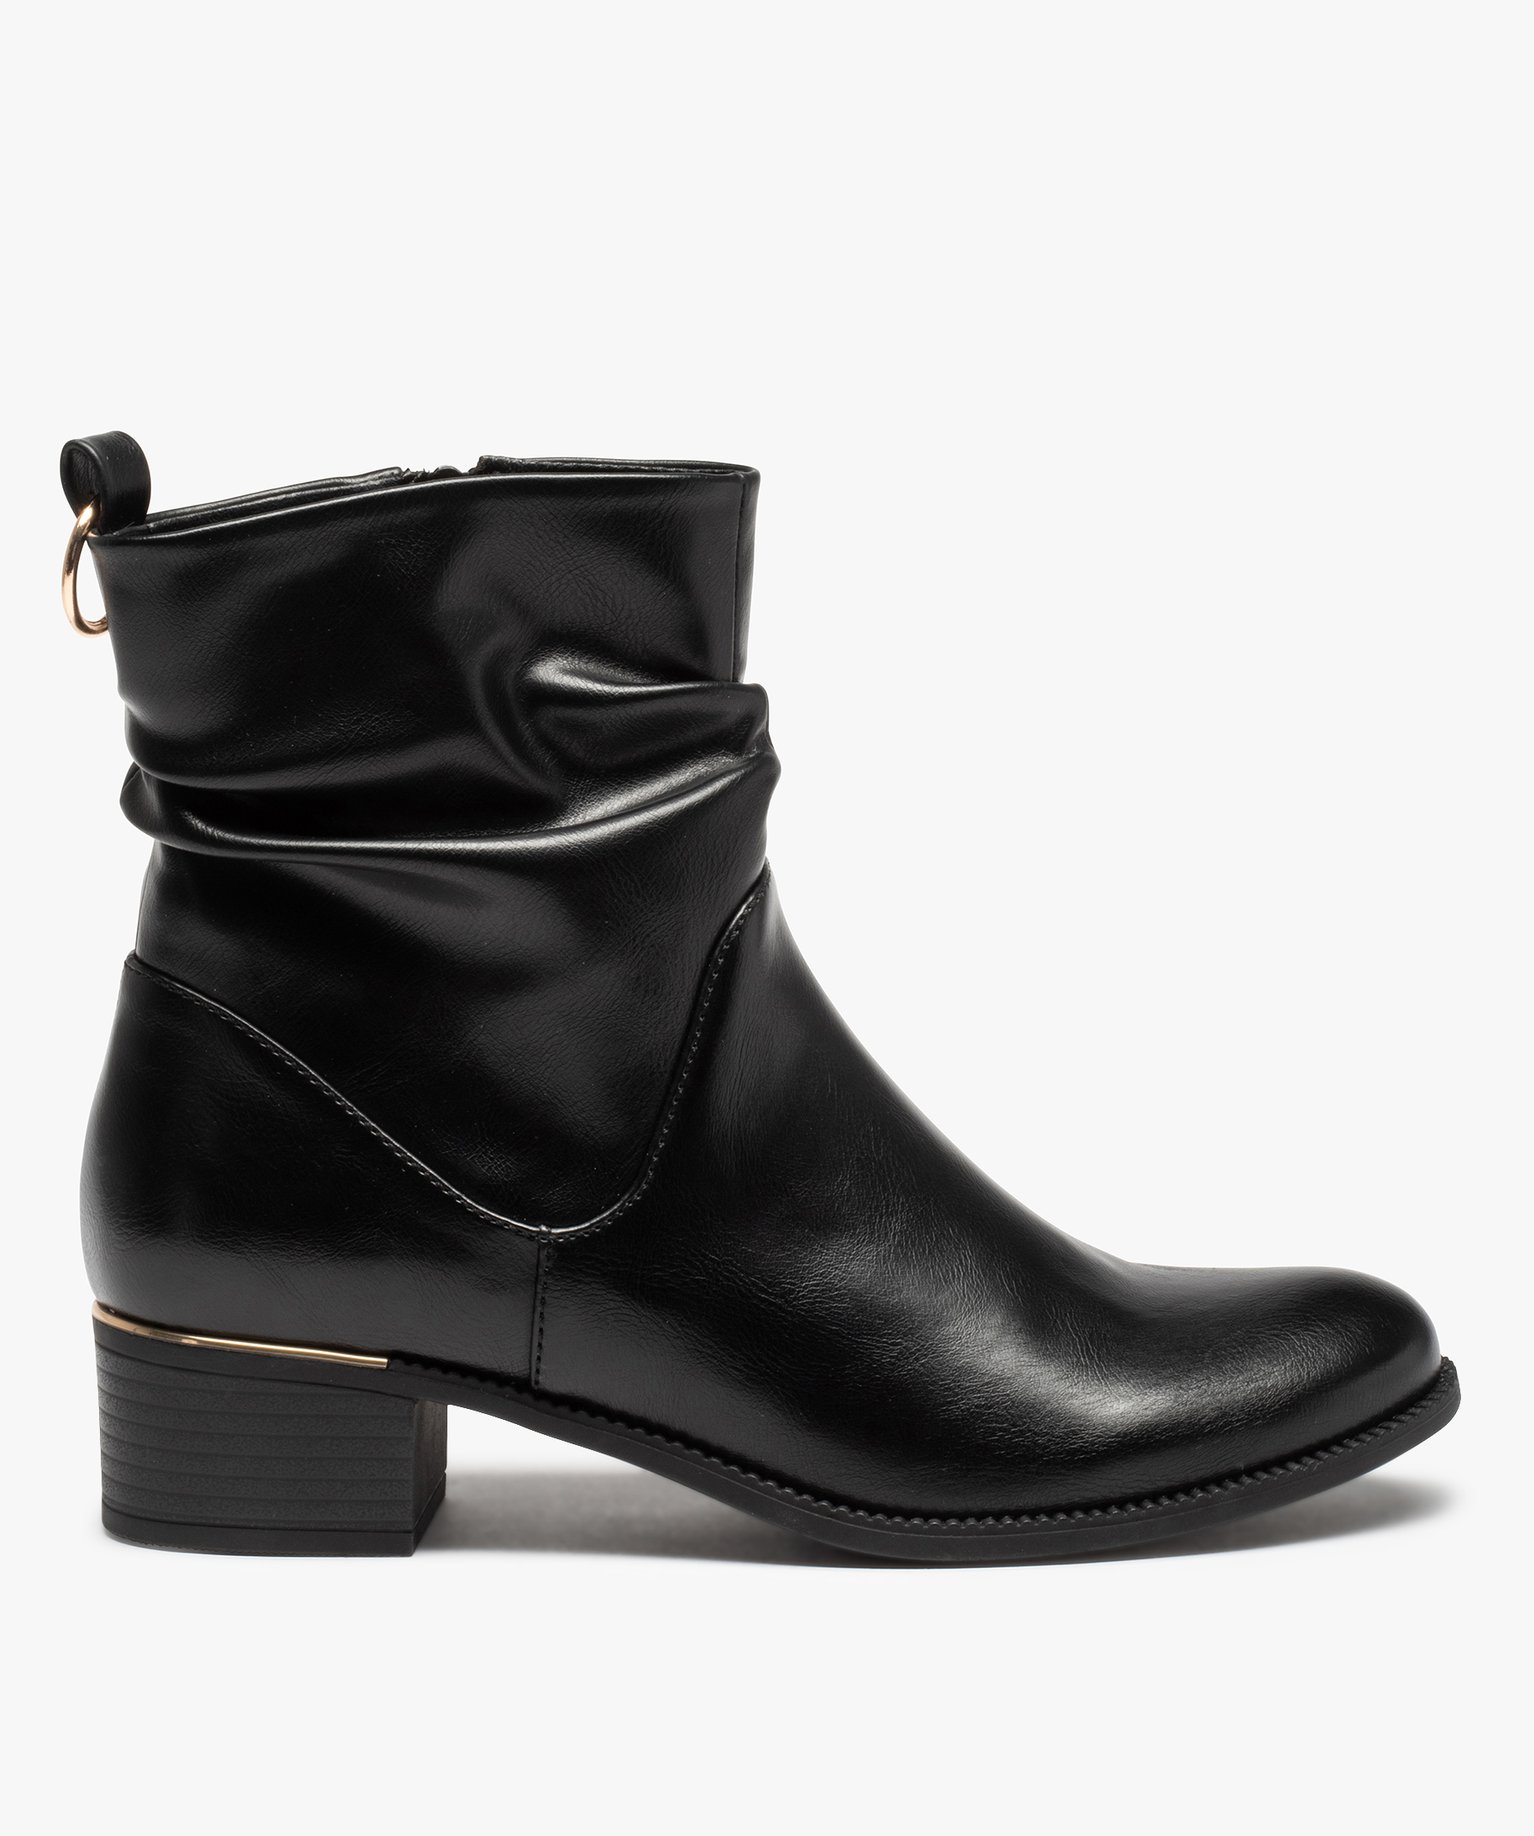 boots femme unies avec effet drape et details metallises noir